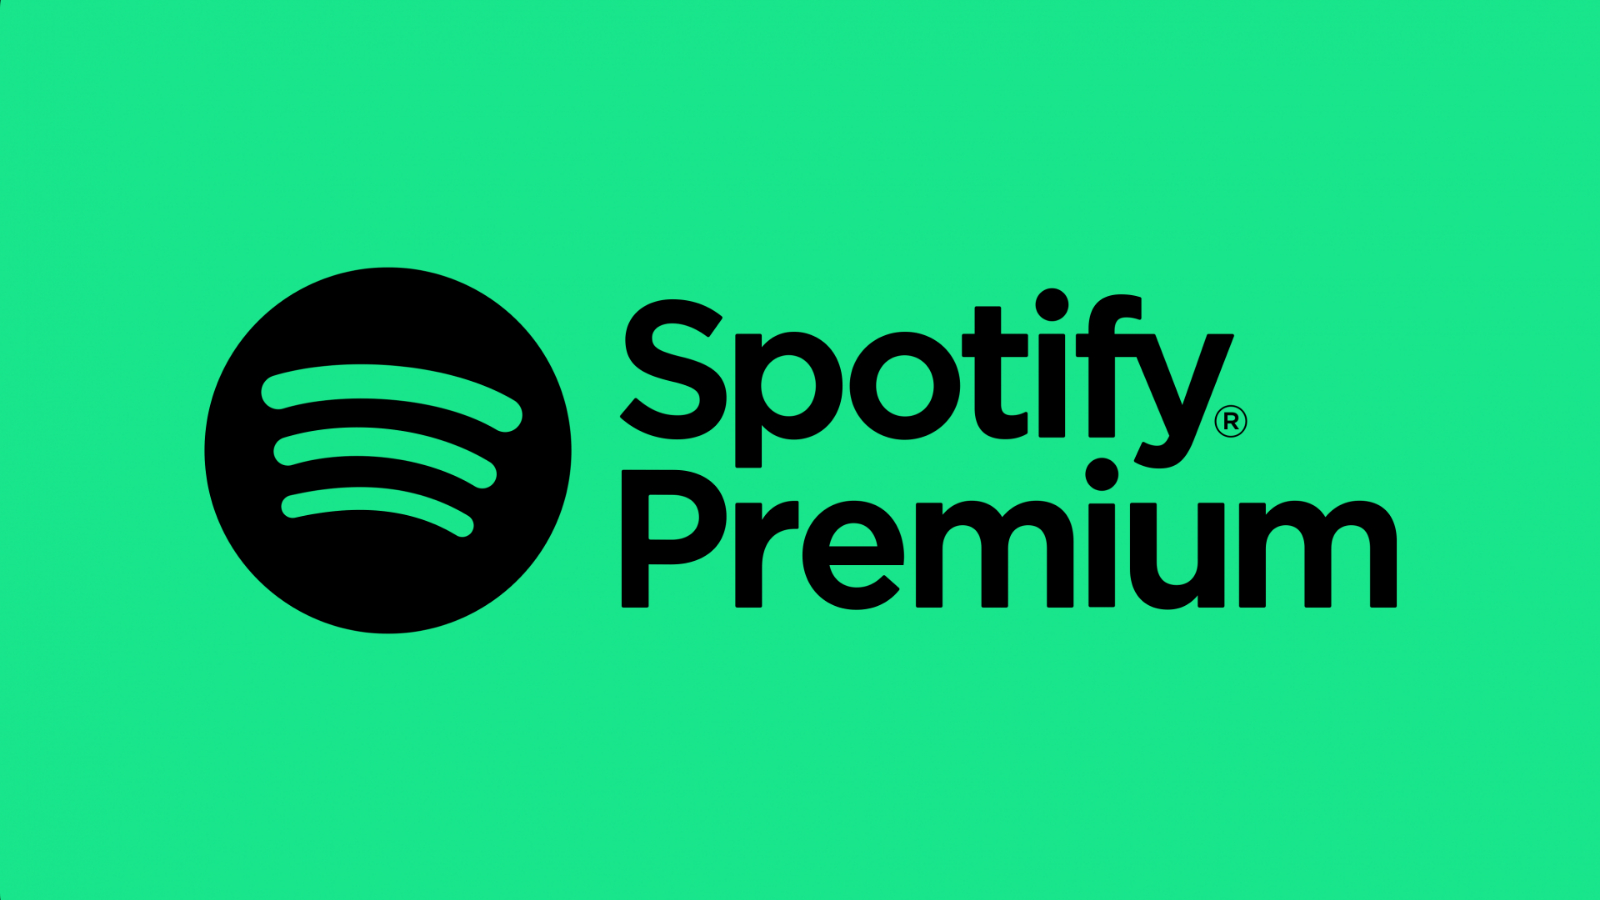 Spotify Premium branding in black